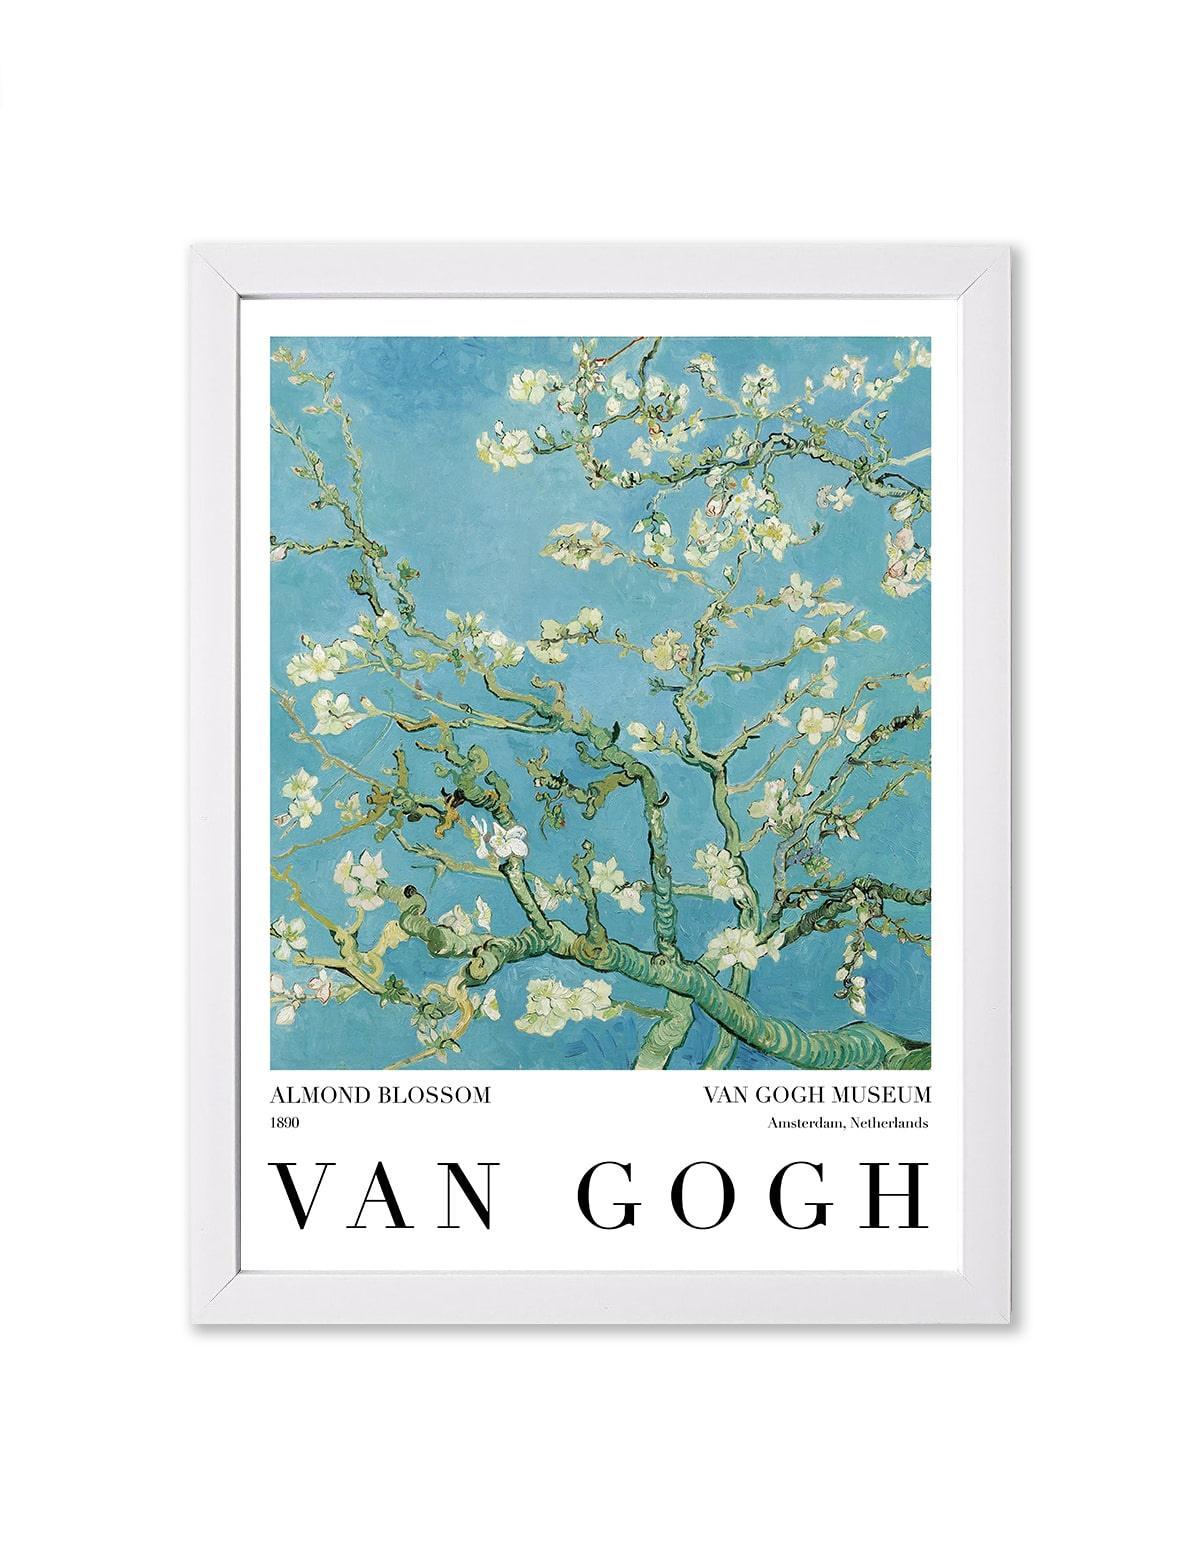 Almond Blossom 1890, Vincent van Gogh - artucky.com